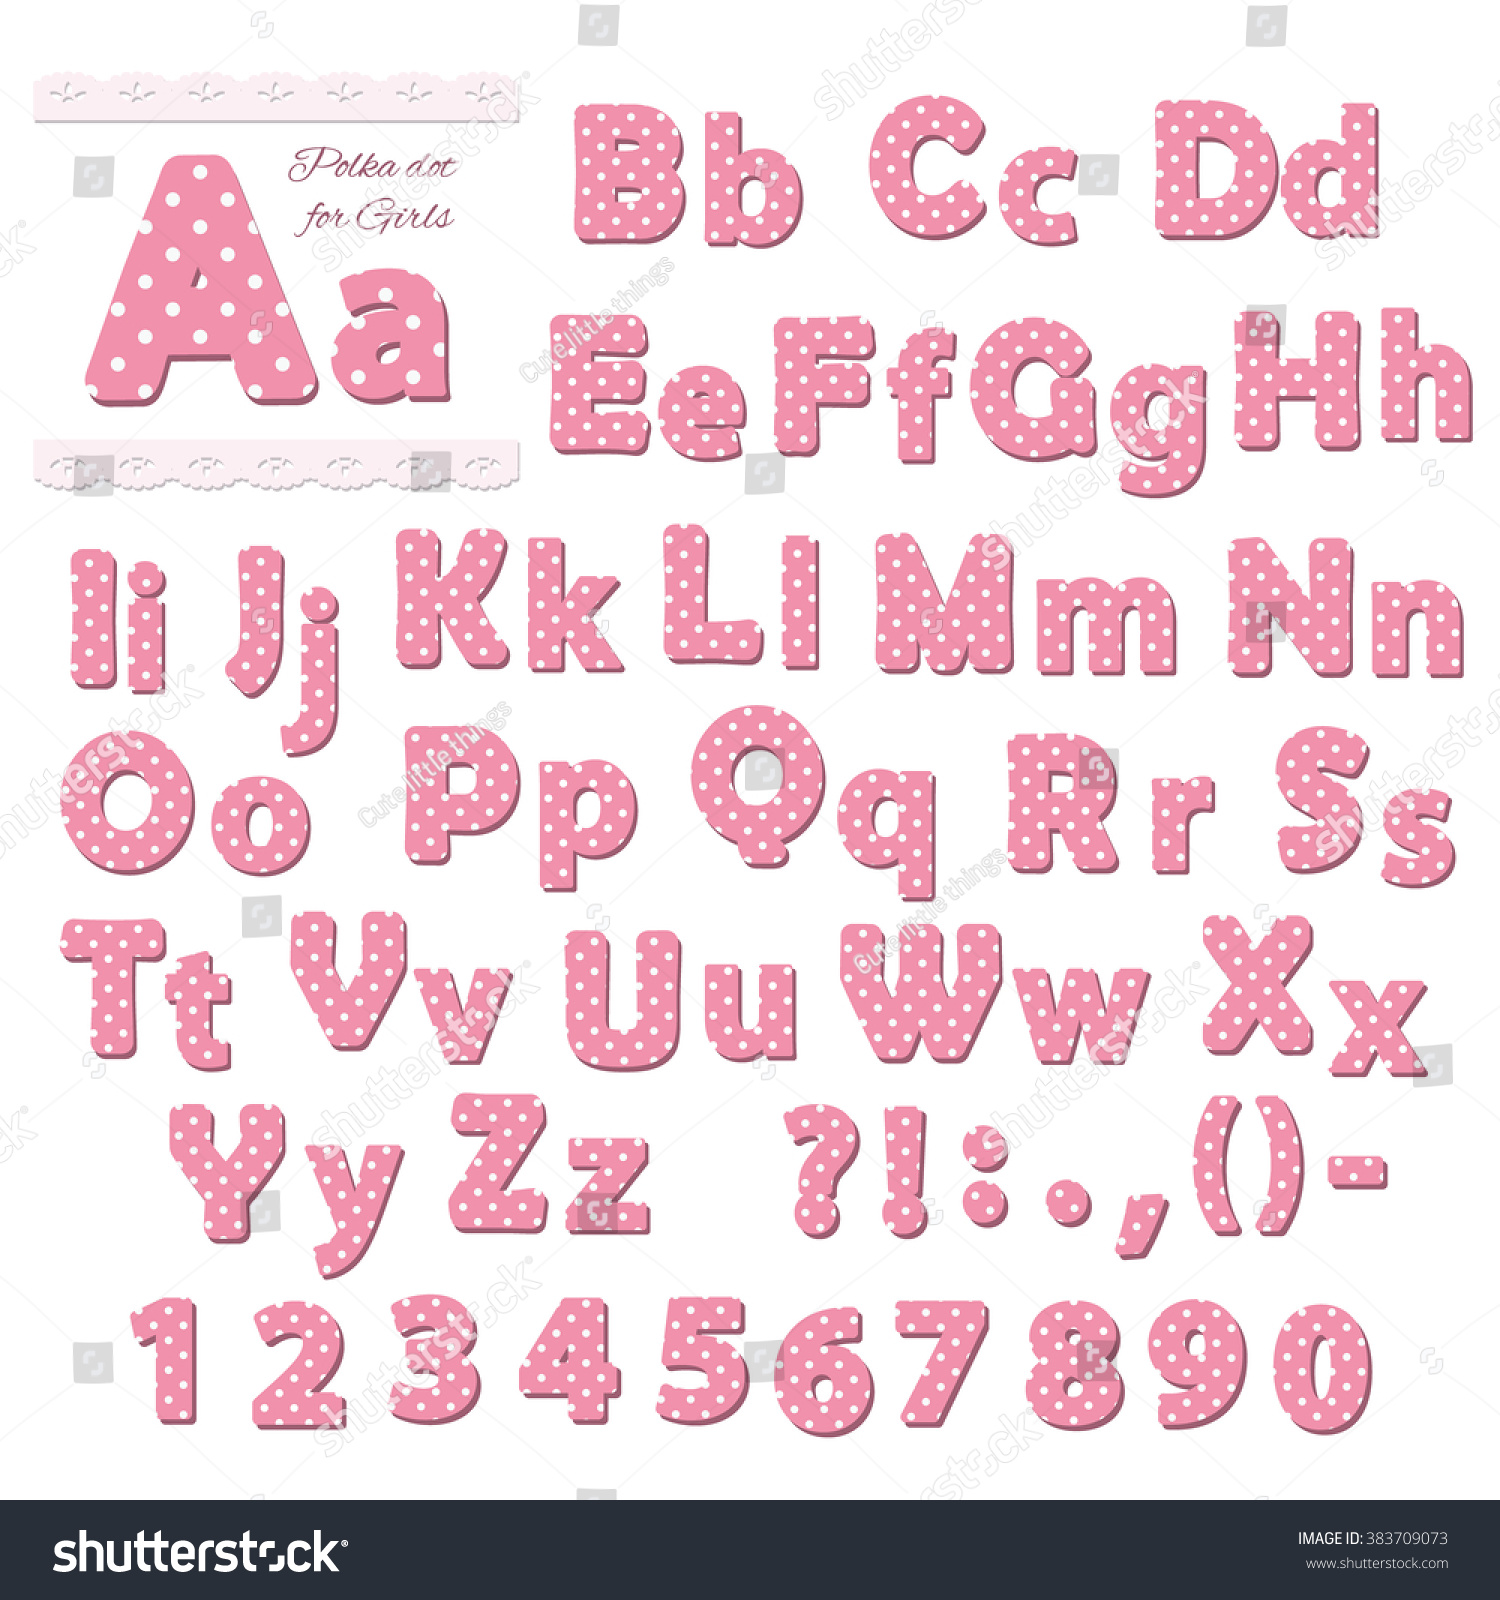 Pink Polka Dot Font For Girls. Stock Vector 383709073 : Shutterstock